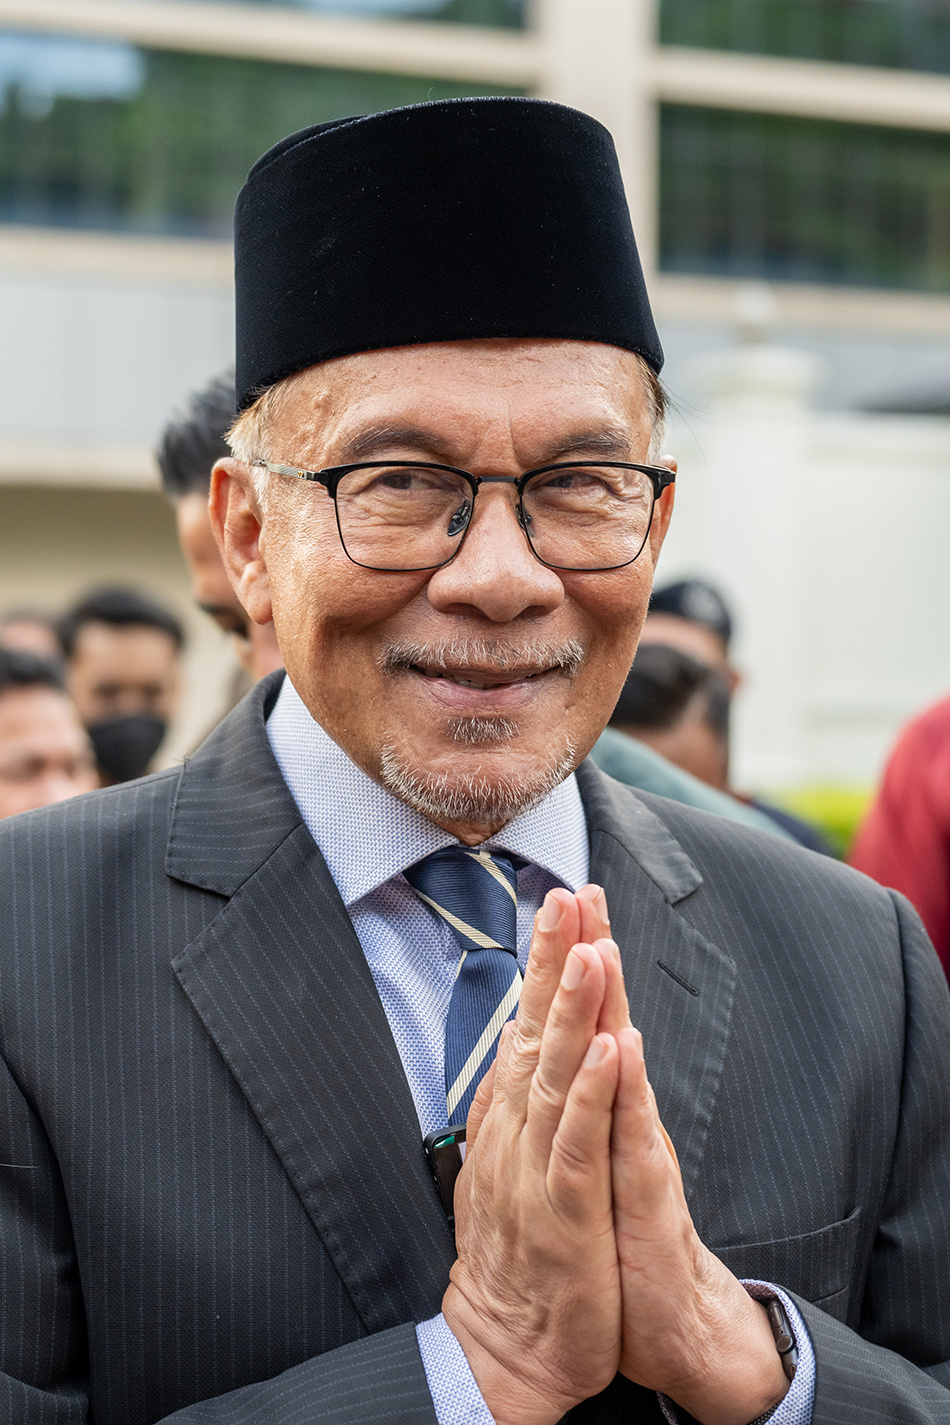 马来西亚总理安瓦尔宣布改组内阁,31名部长仍降薪20%